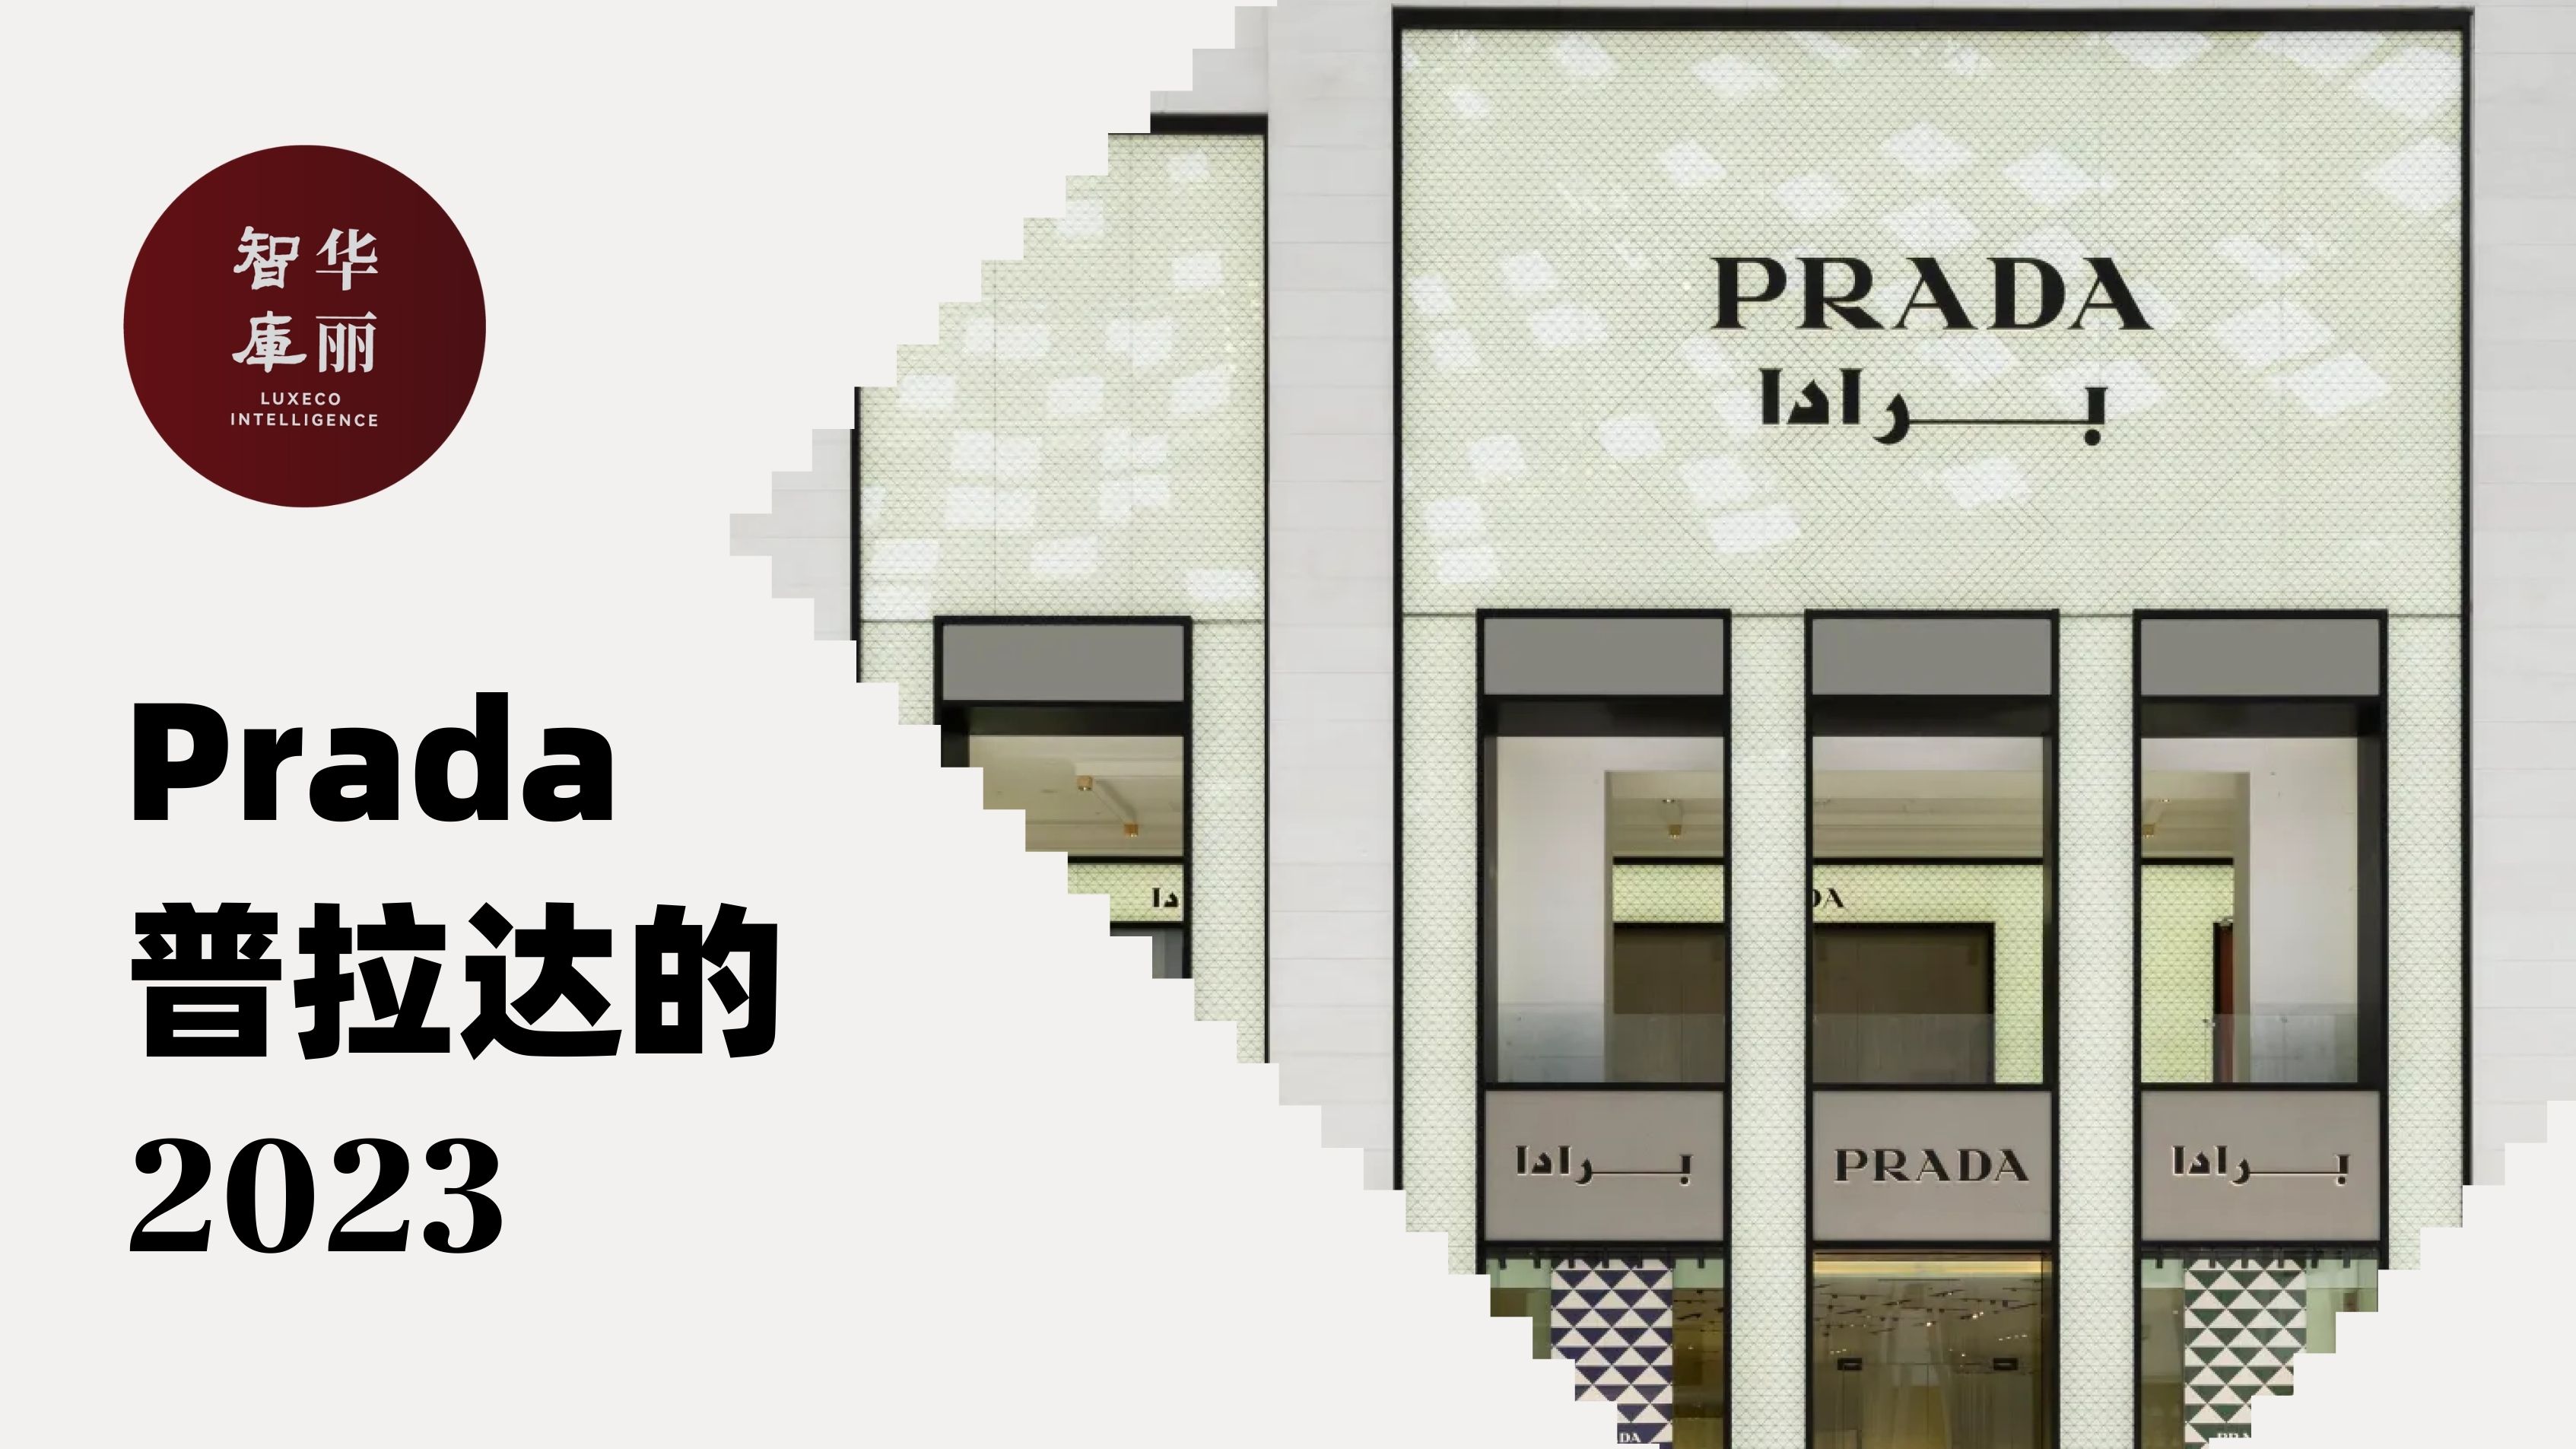 过去一年，Prada 如何强化“底层逻辑”？「华丽智库」发布《Prada 的2023》